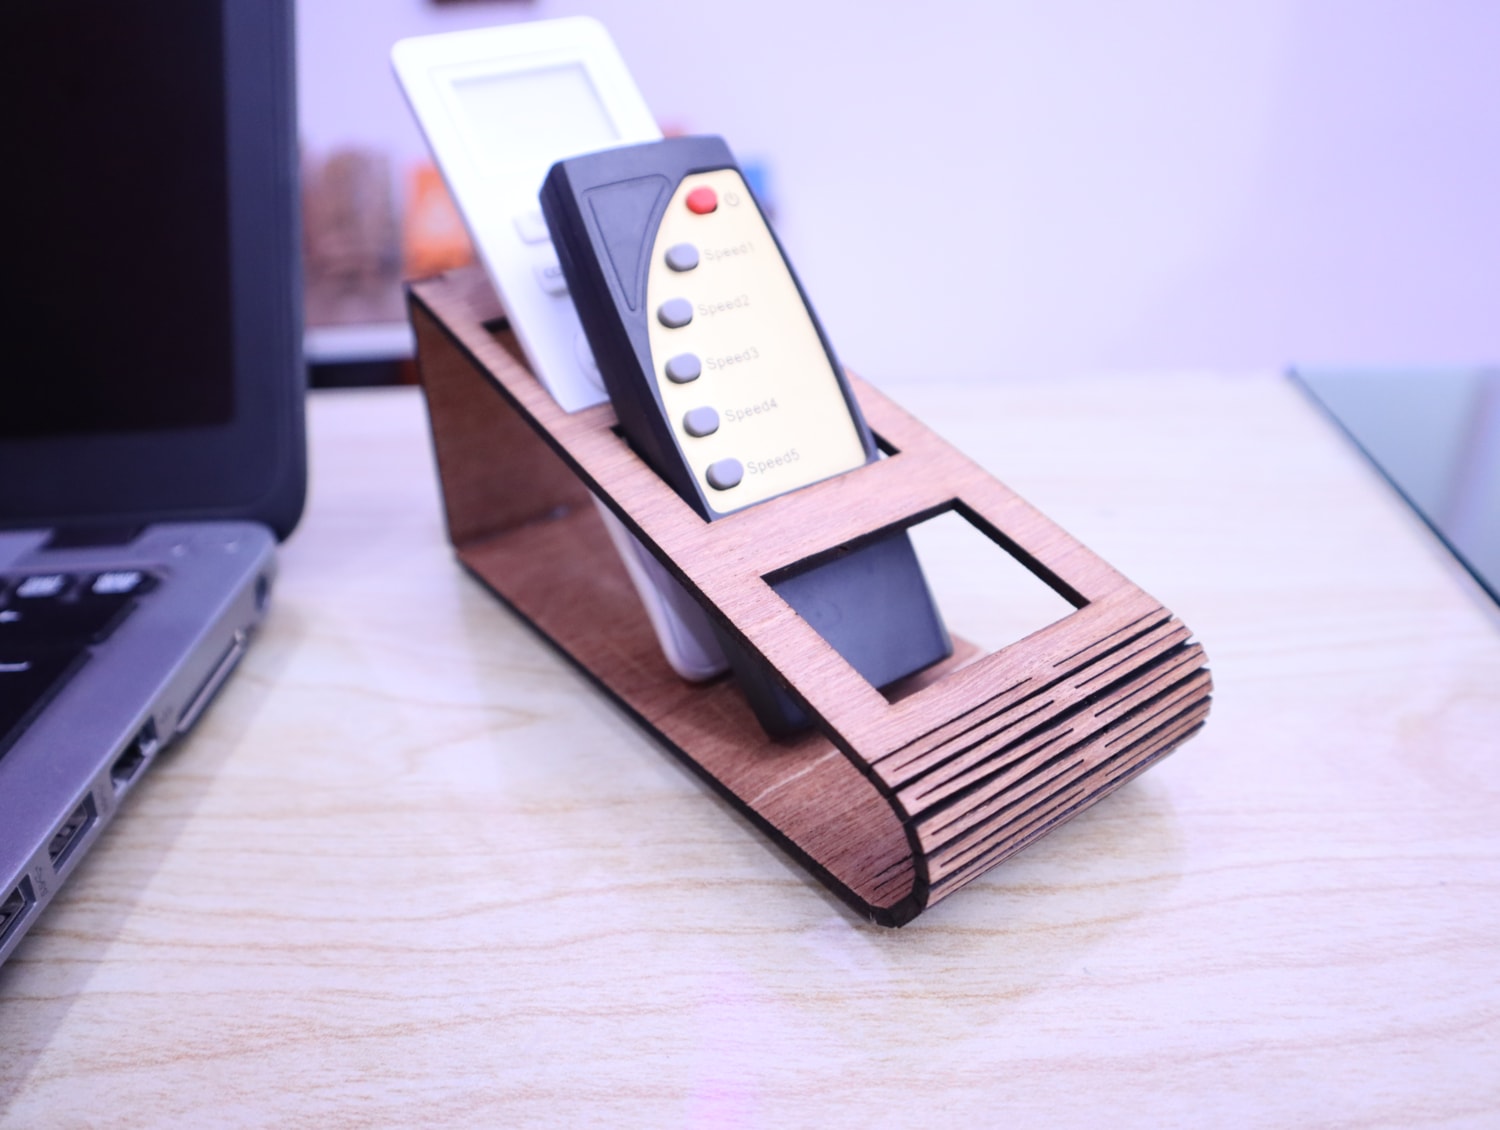 Laser Cut Wooden Laptop Stand for Desk Svg Dxf Pdf Ai Cdr Vector File  Digital INSTANT DOWNLOAD 